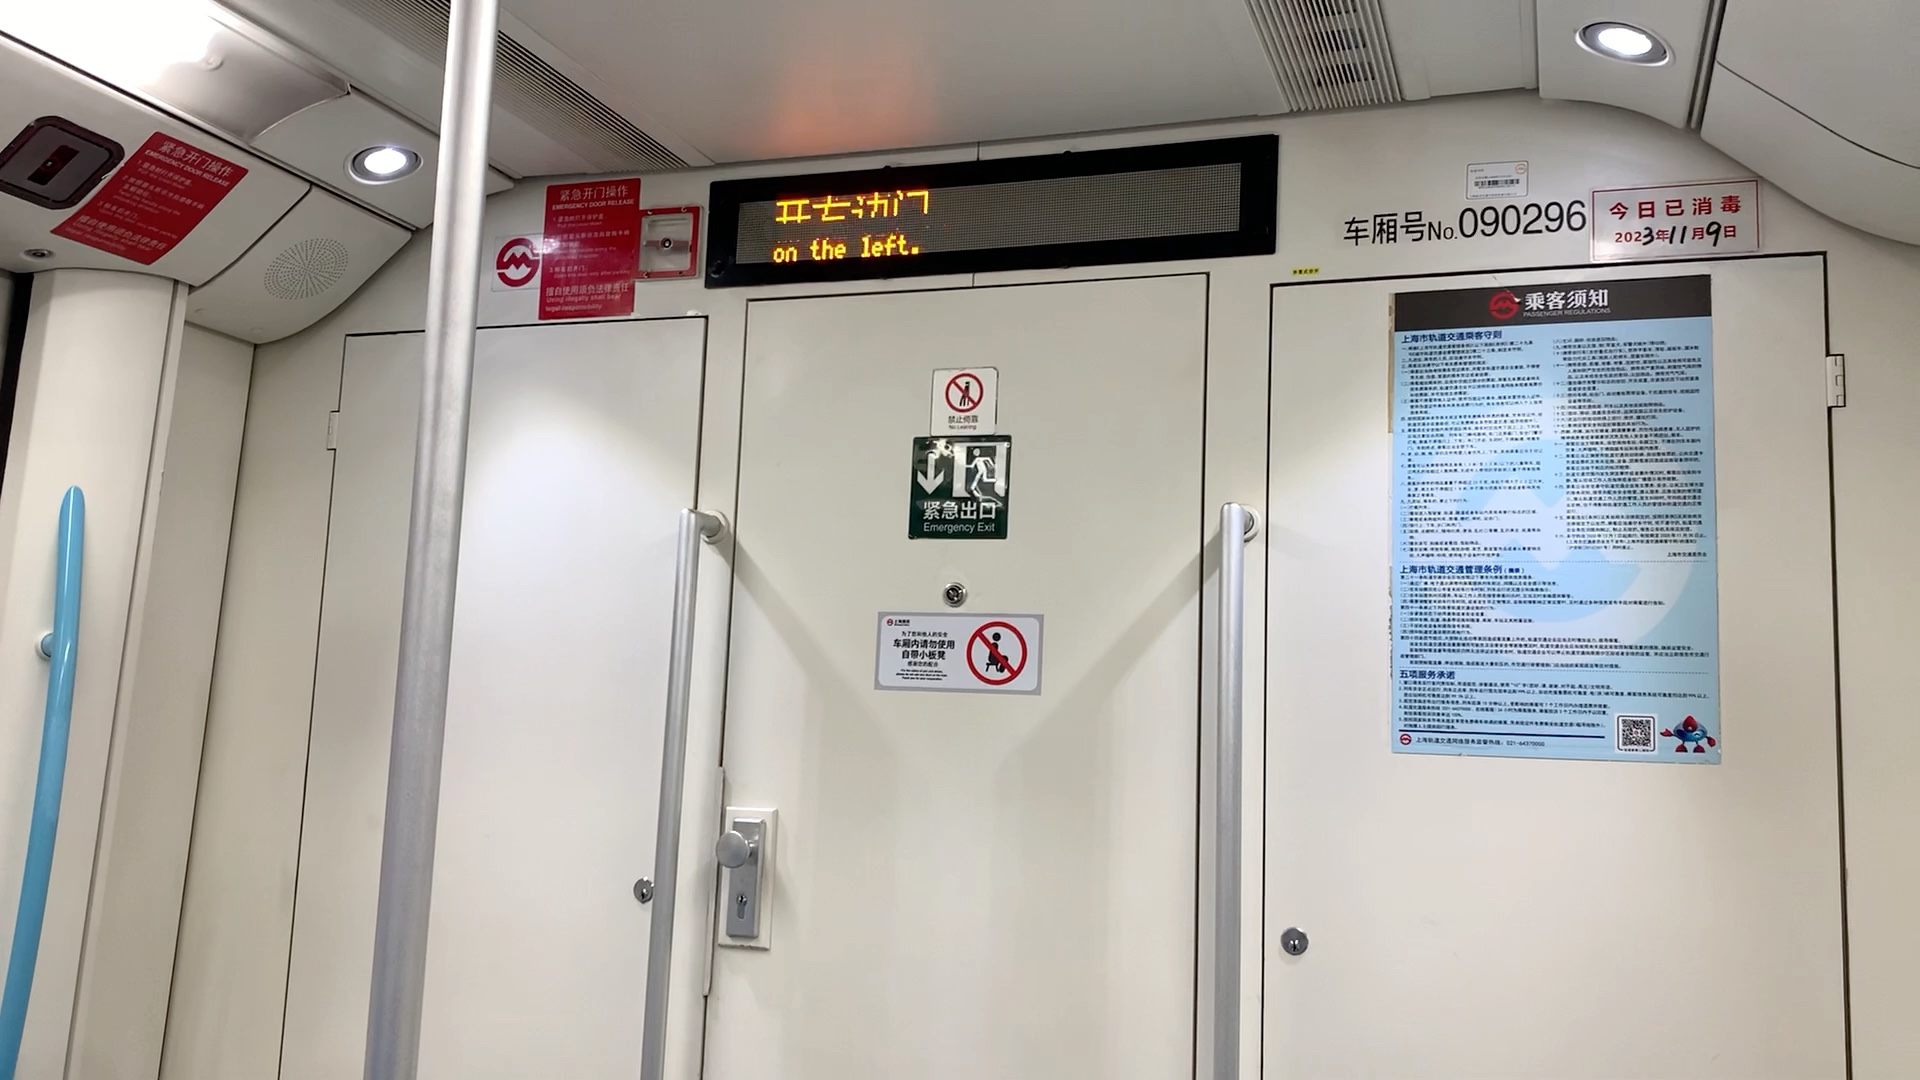 上海地铁九号线坂田929完成杨高中路后进行折返,终点站佘山